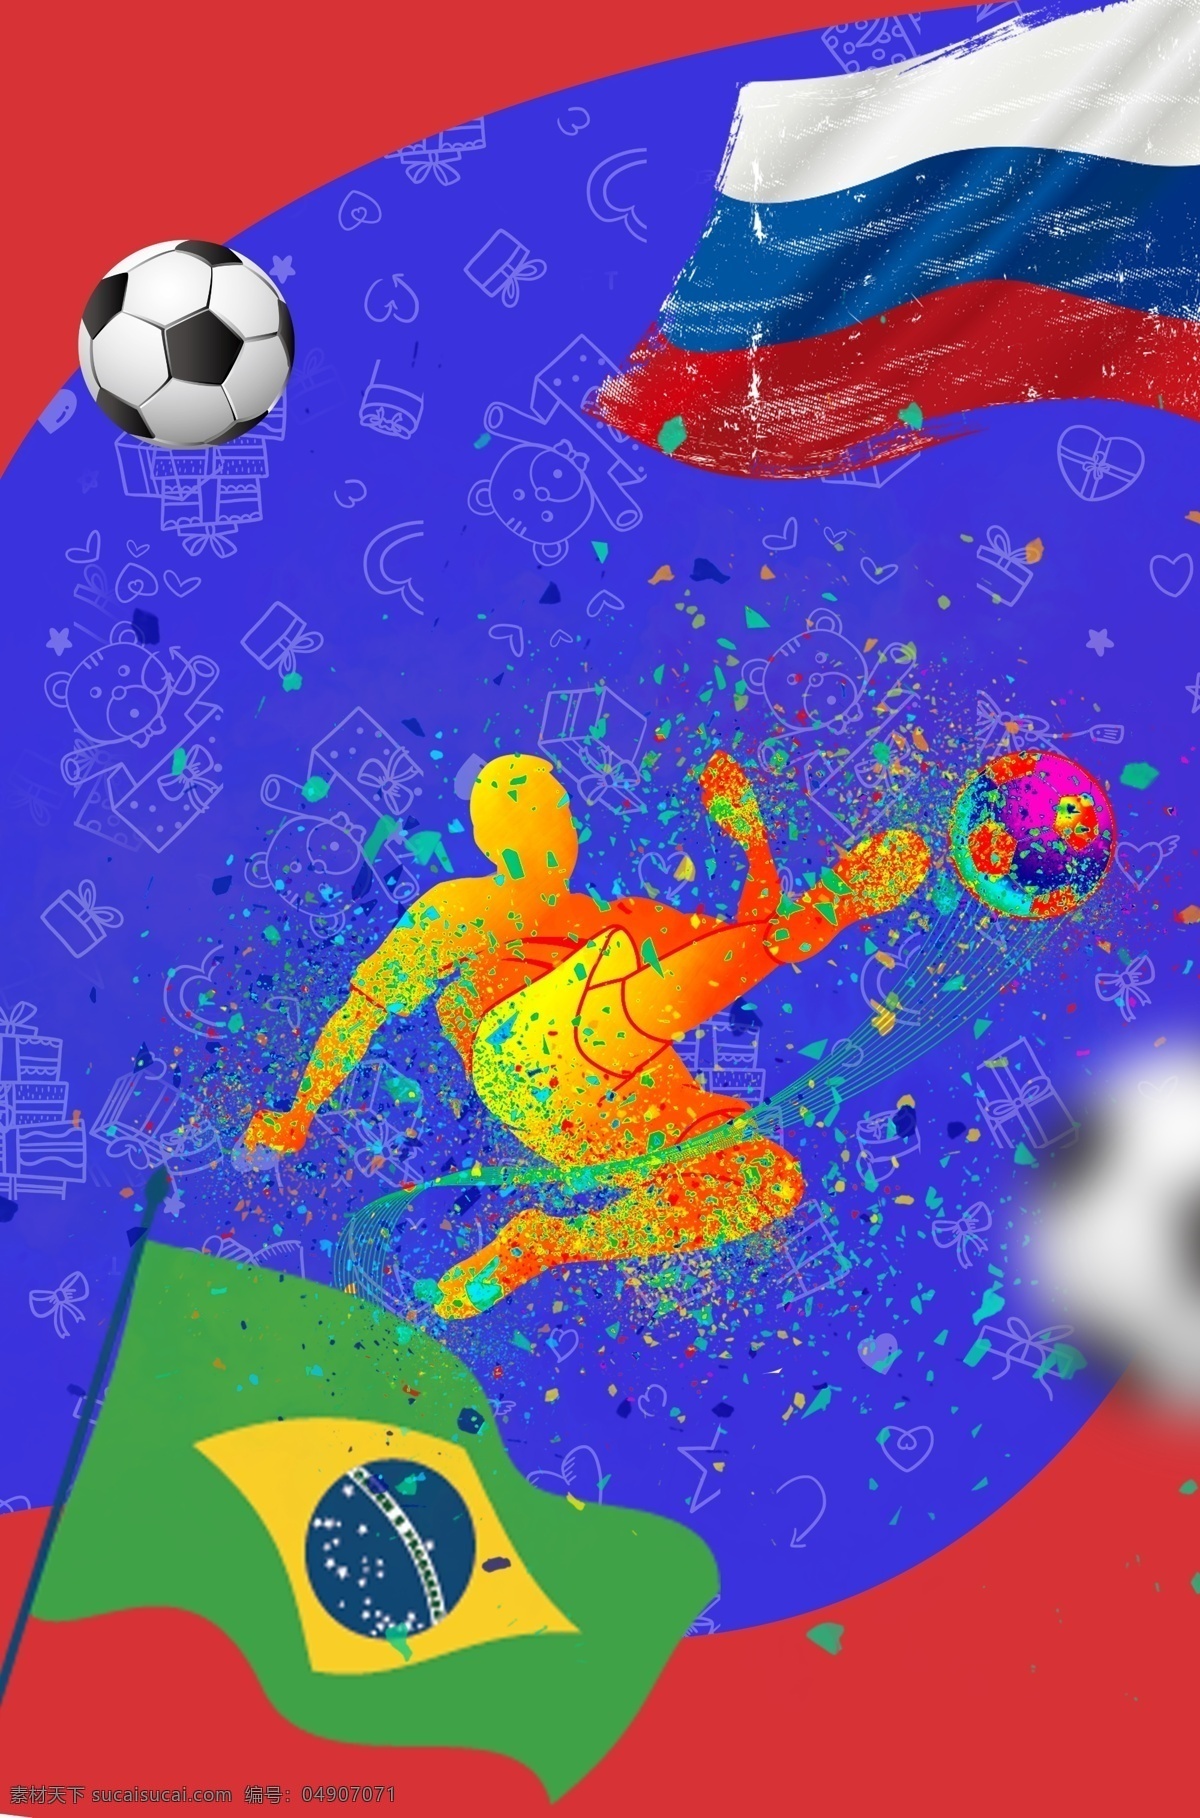 激情 世界杯 蓝 红 踢 足球 简约 另类 广告 背景 蓝红 踢足球